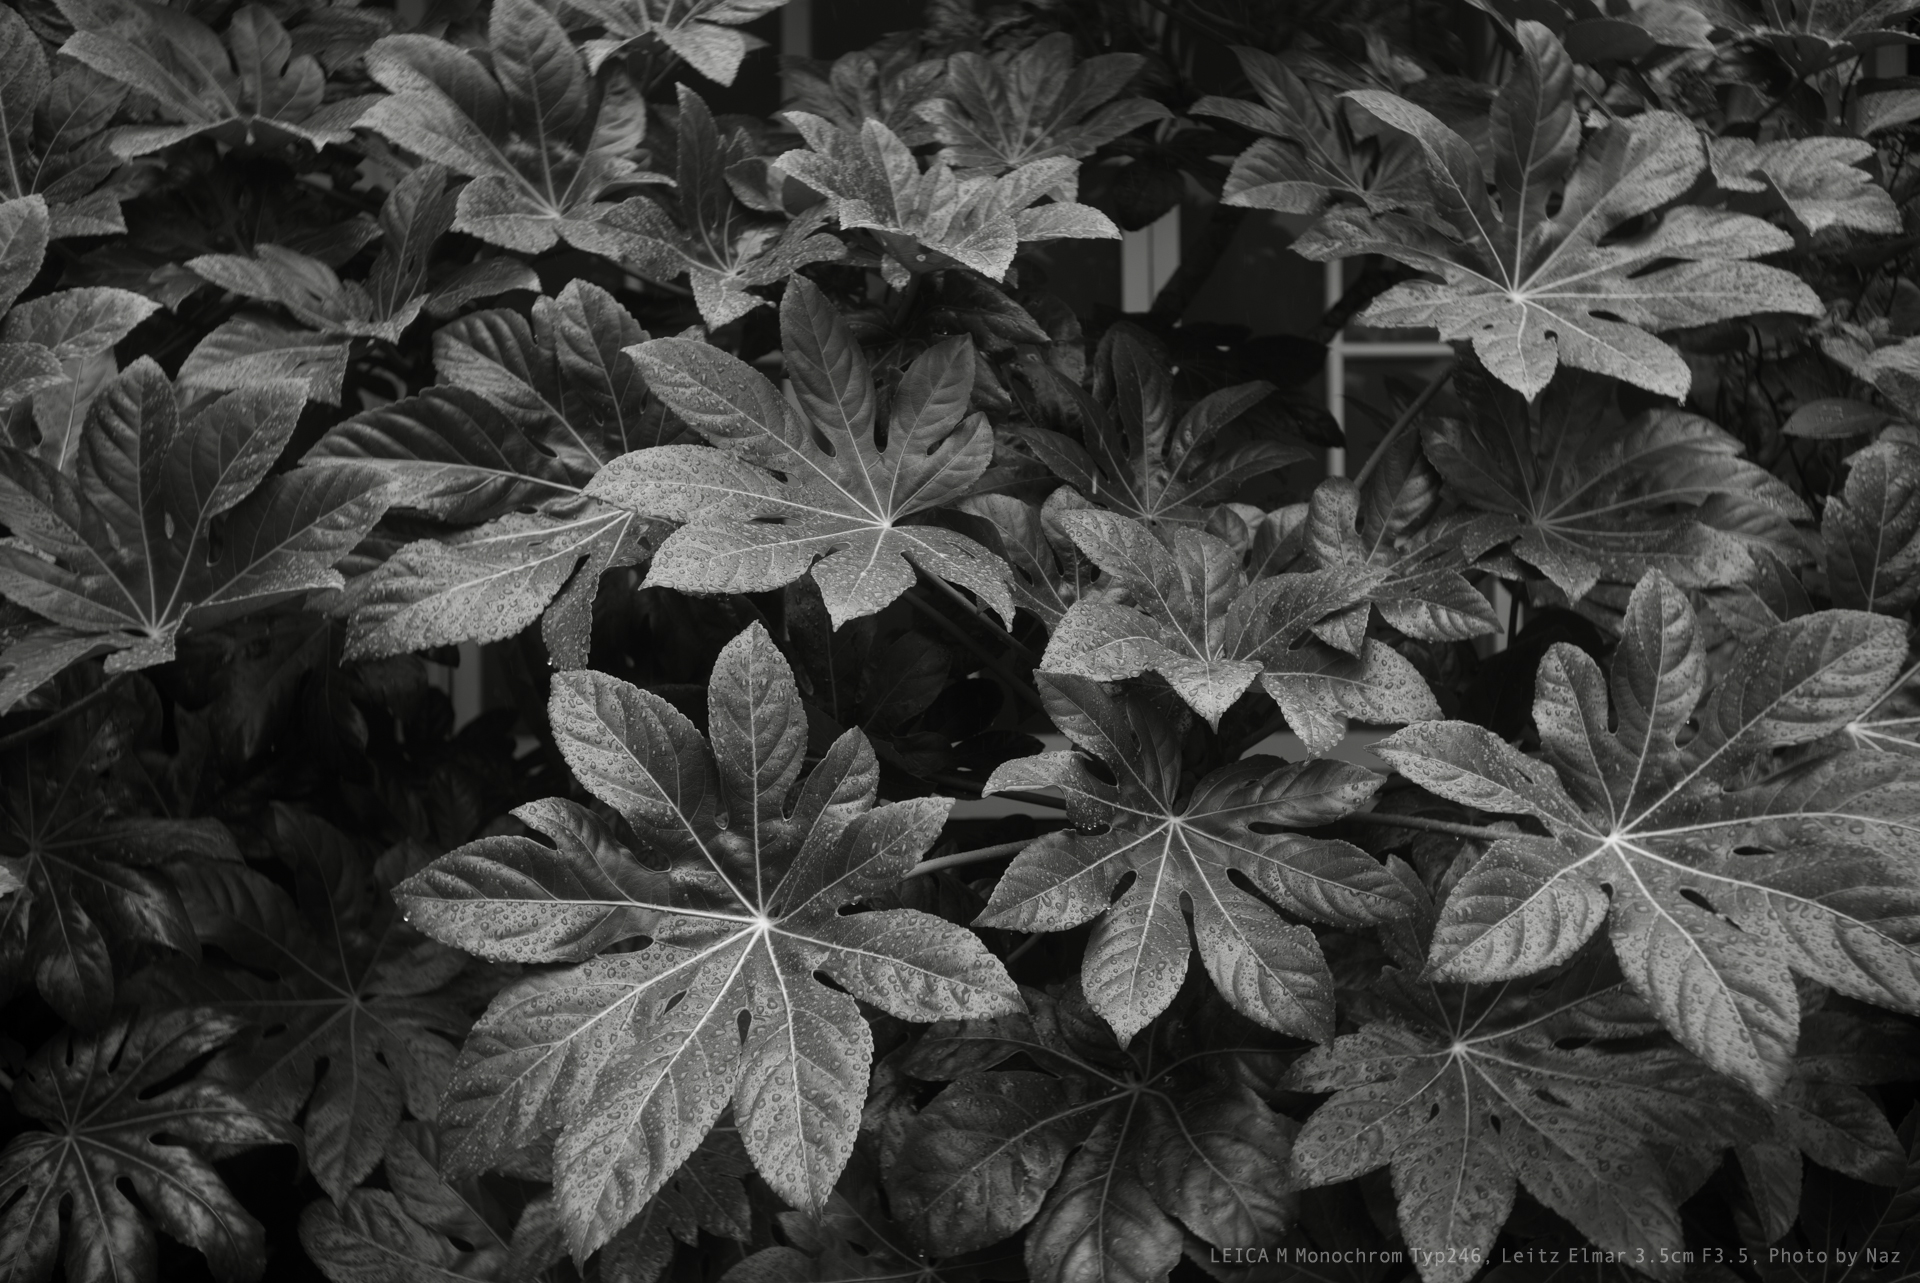 Leica M Monochrom Typ246, Leitz Elmar 3.5cm F3.5, Photo by Naz